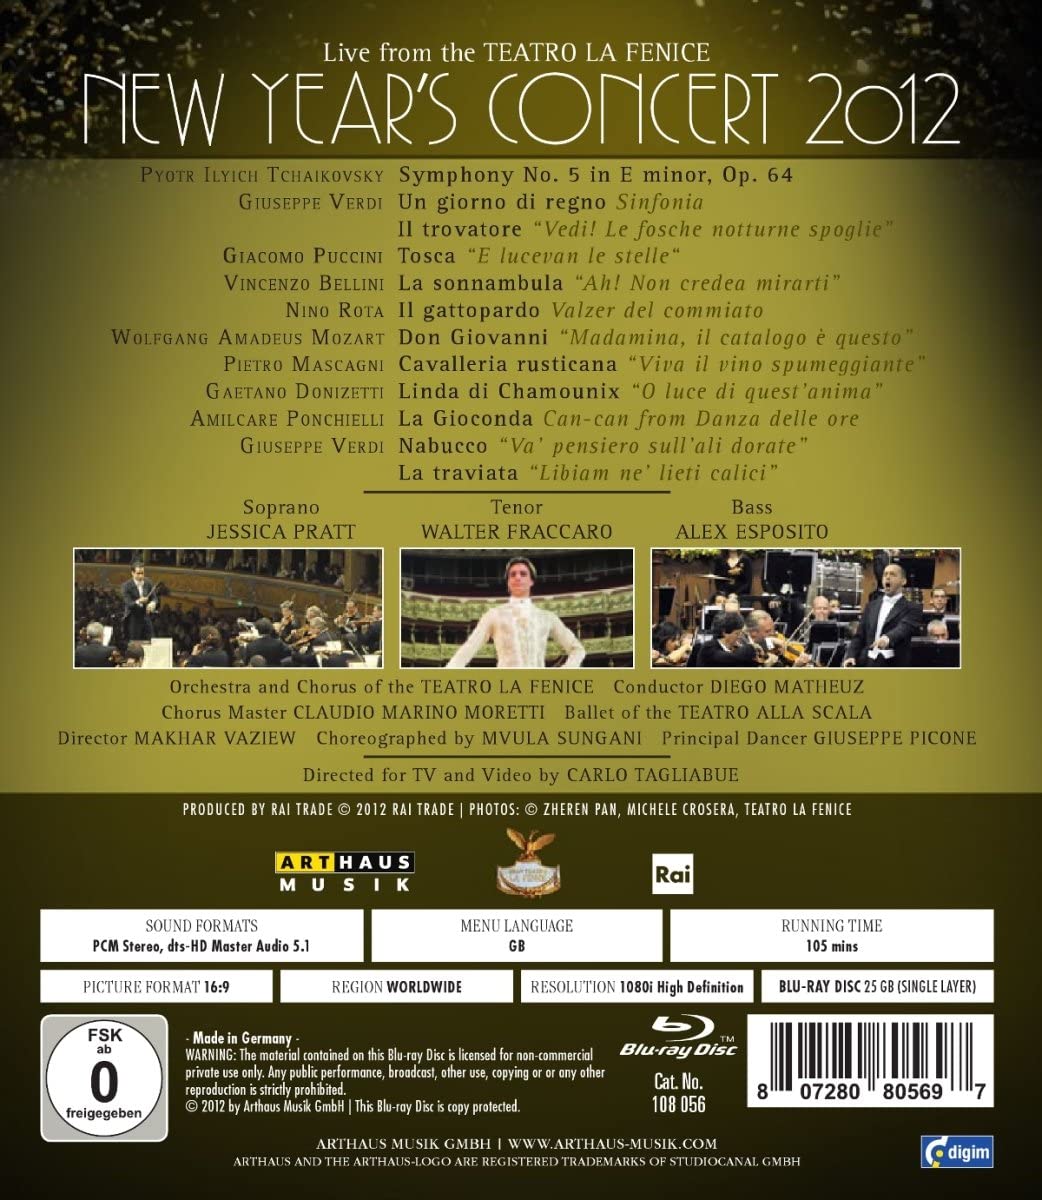 Teatro La Fenice - New Years Concert 2012 - slide-1